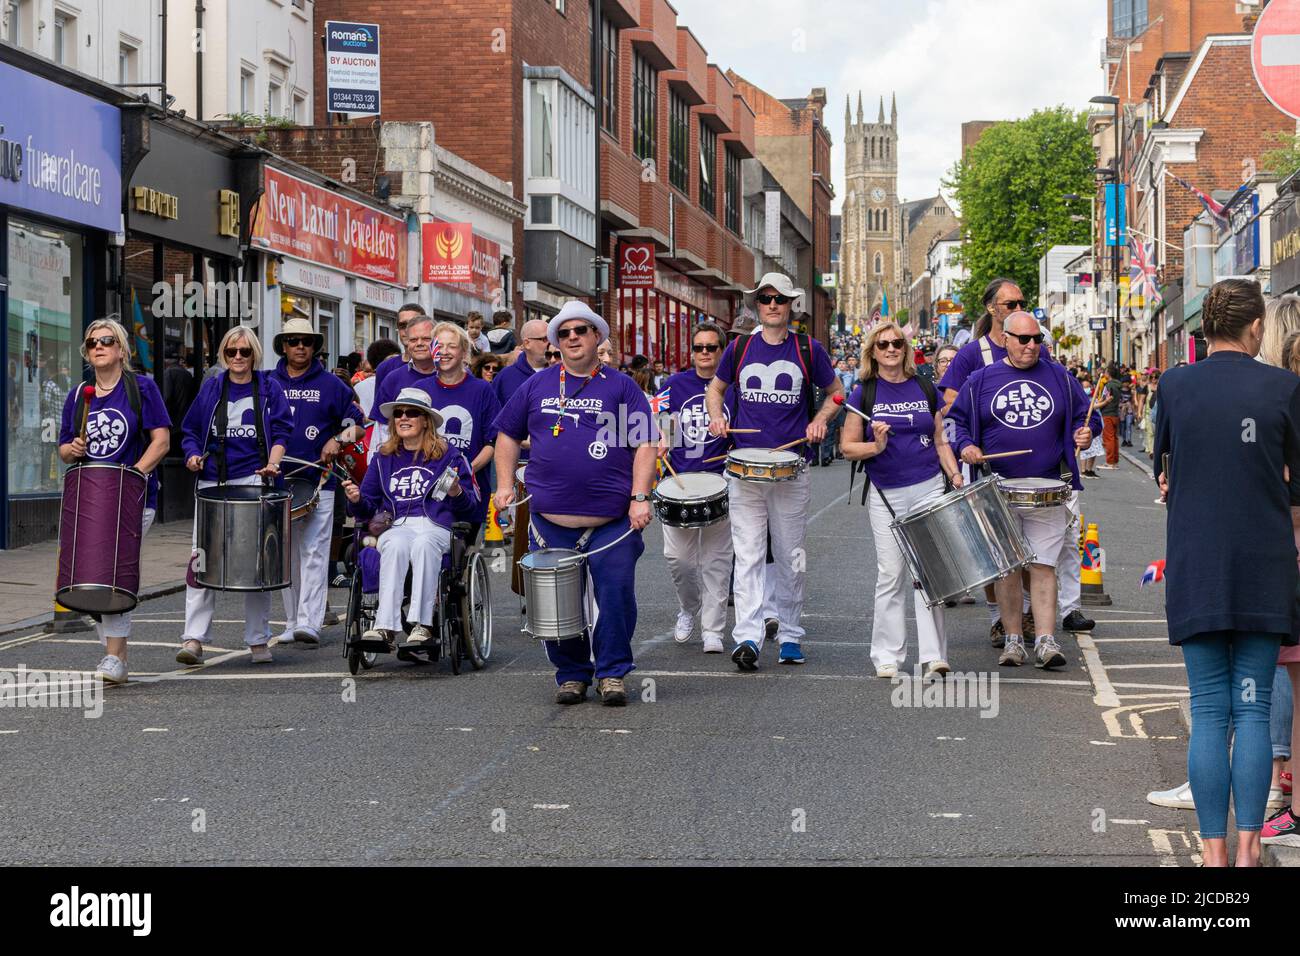 Beatrots Bateria de Reading, un groupe de percussions de Samba, dans le Grand Parade à Victoria Day, un événement annuel à Aldershot, Hampshire, Angleterre, Royaume-Uni Banque D'Images